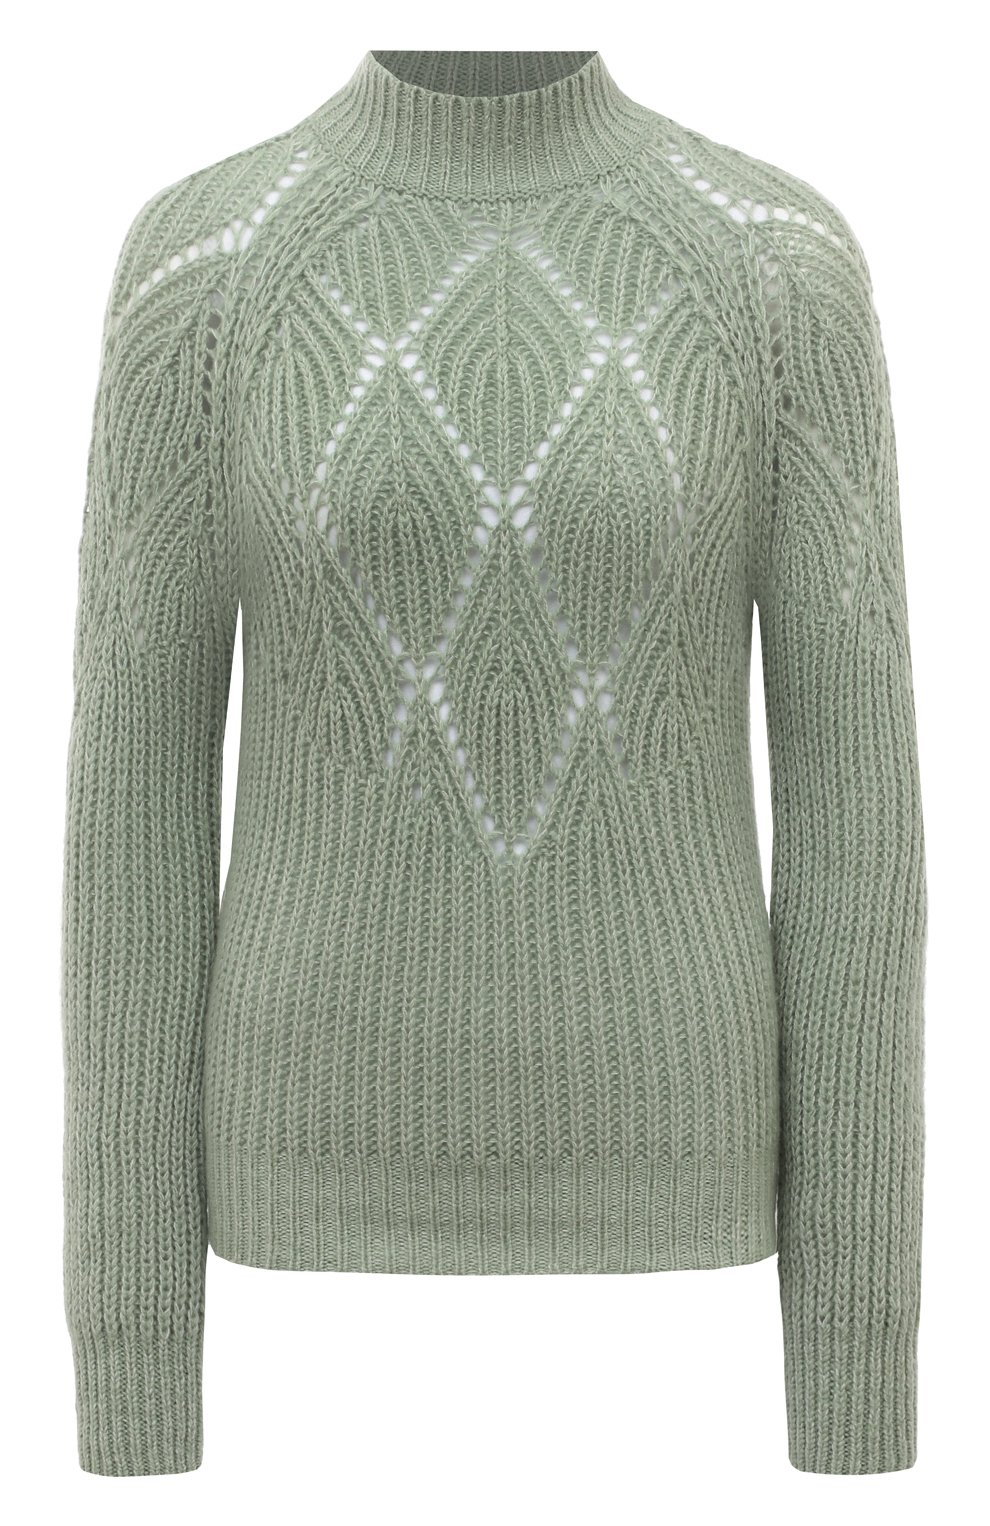 Длинный ажурный свитер спицами из кашемира - Колибри